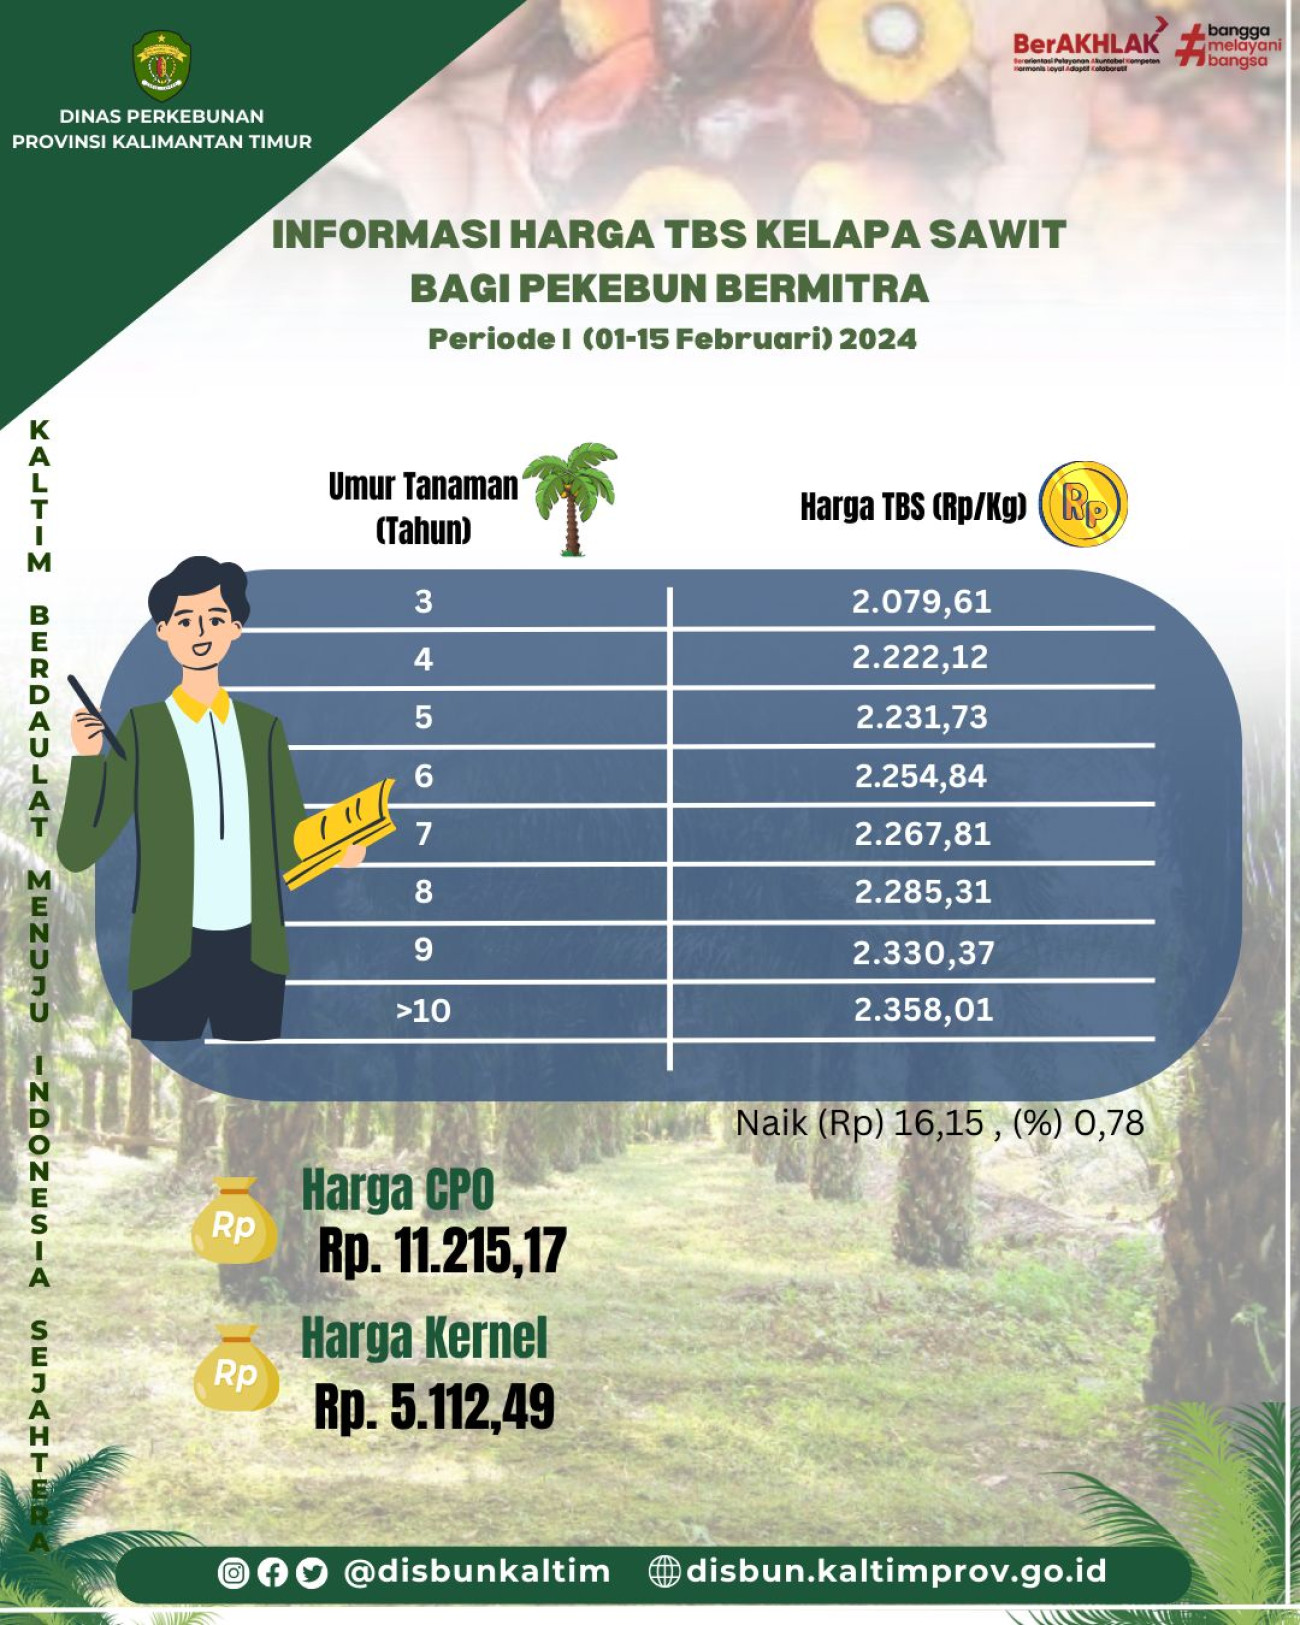 Informasi Harga TBS Kelapa Sawit bagi Pekebun Mitra Periode I Bulan Pebruari 2024